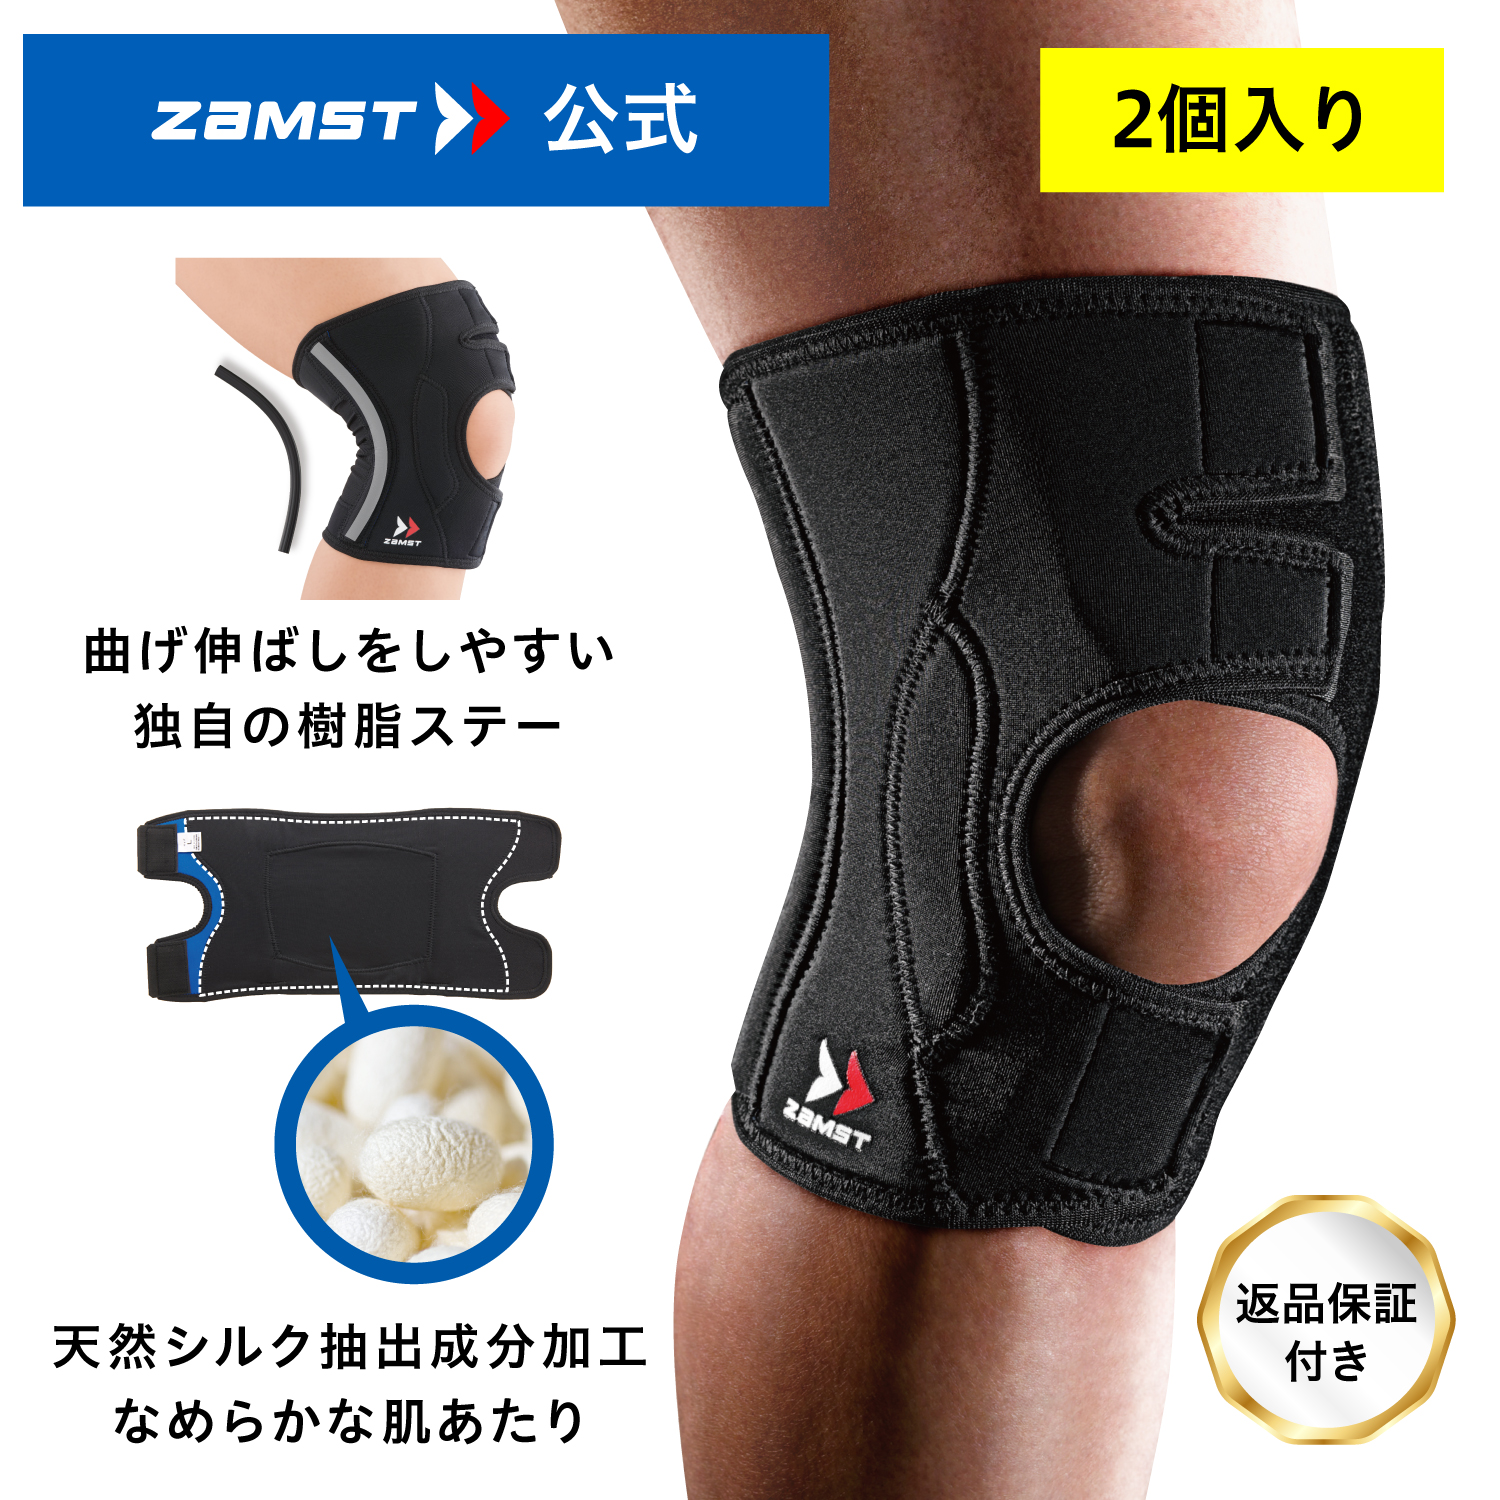 【楽天市場】【ポイント5倍:マラソン期間限定 】 膝サポーター 2個